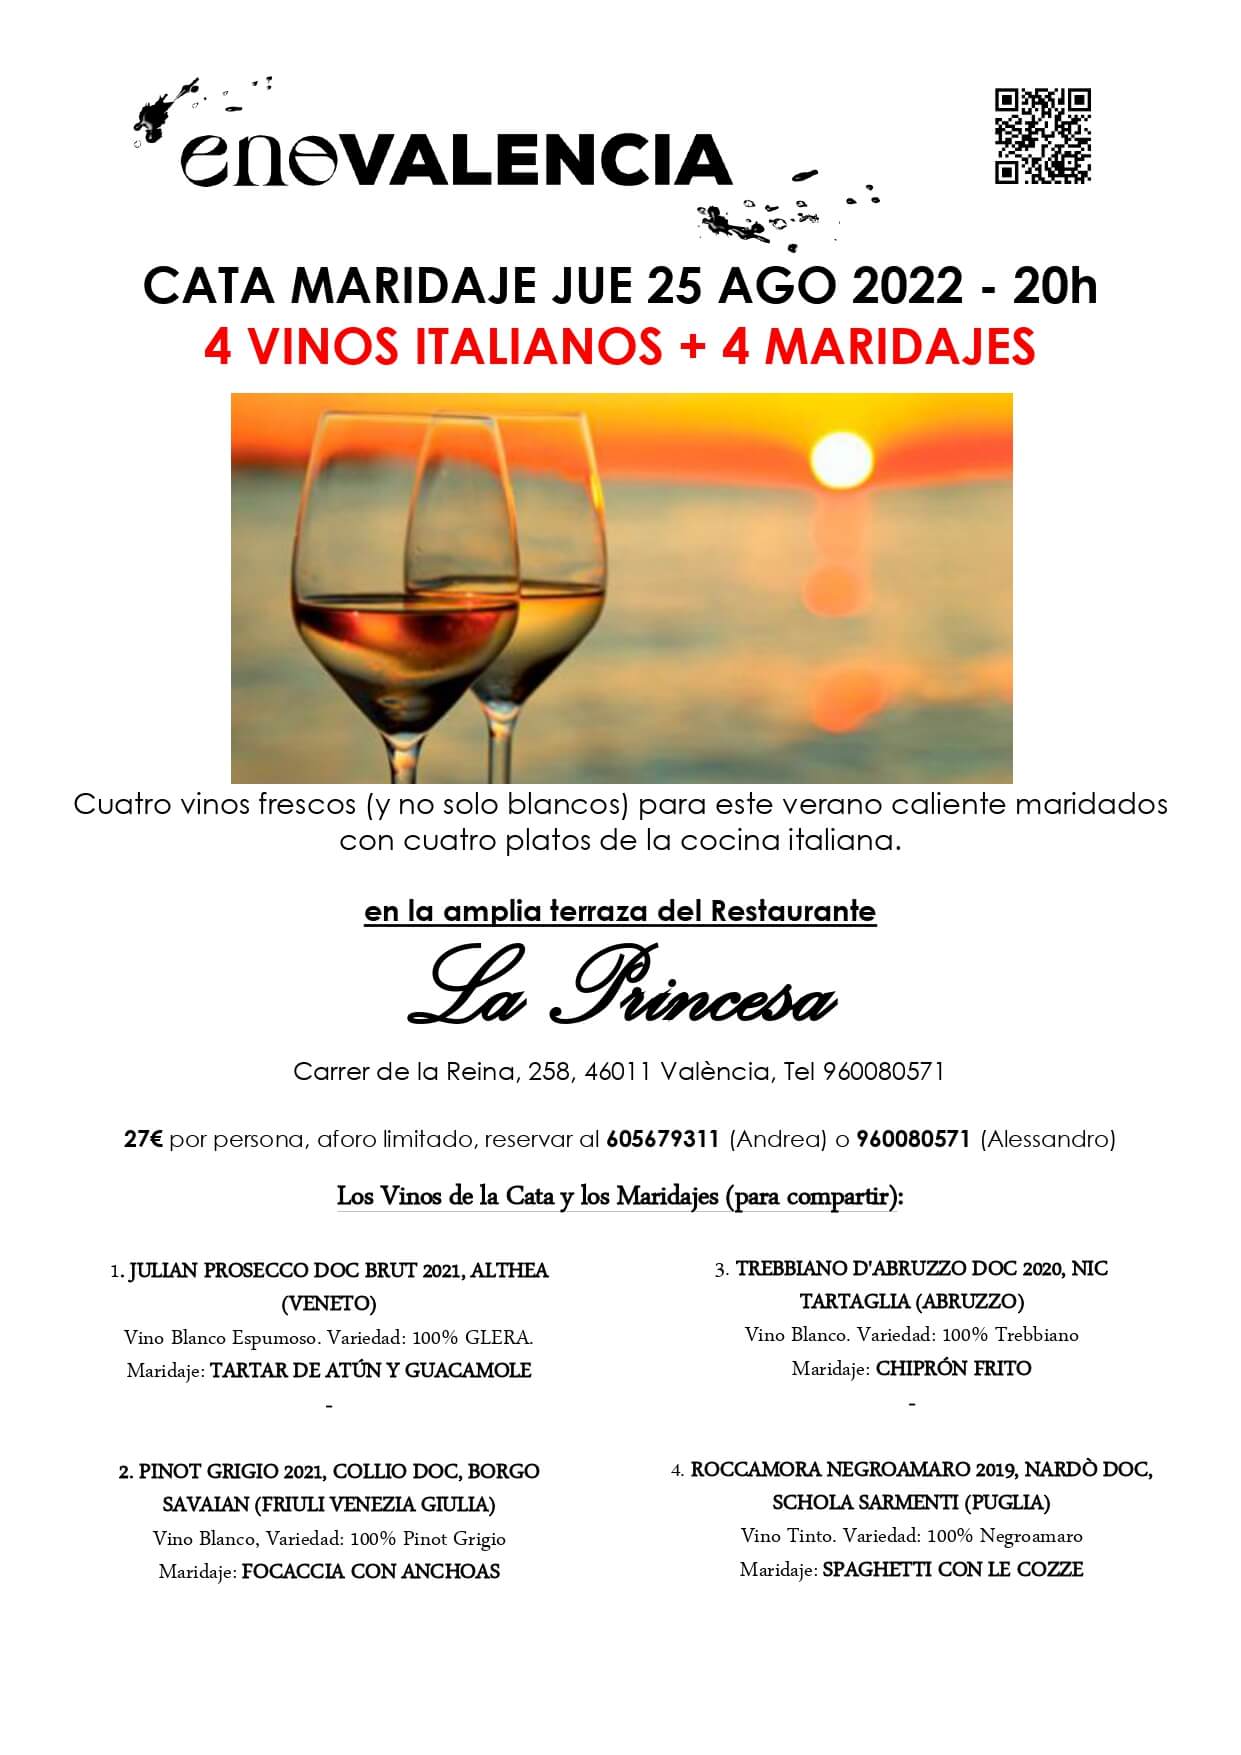 Cenas y maridajes 4 Vinos de Verano y 4 maridajes (Evento) EnoValencia - Cata, eventos y venta de vino 9